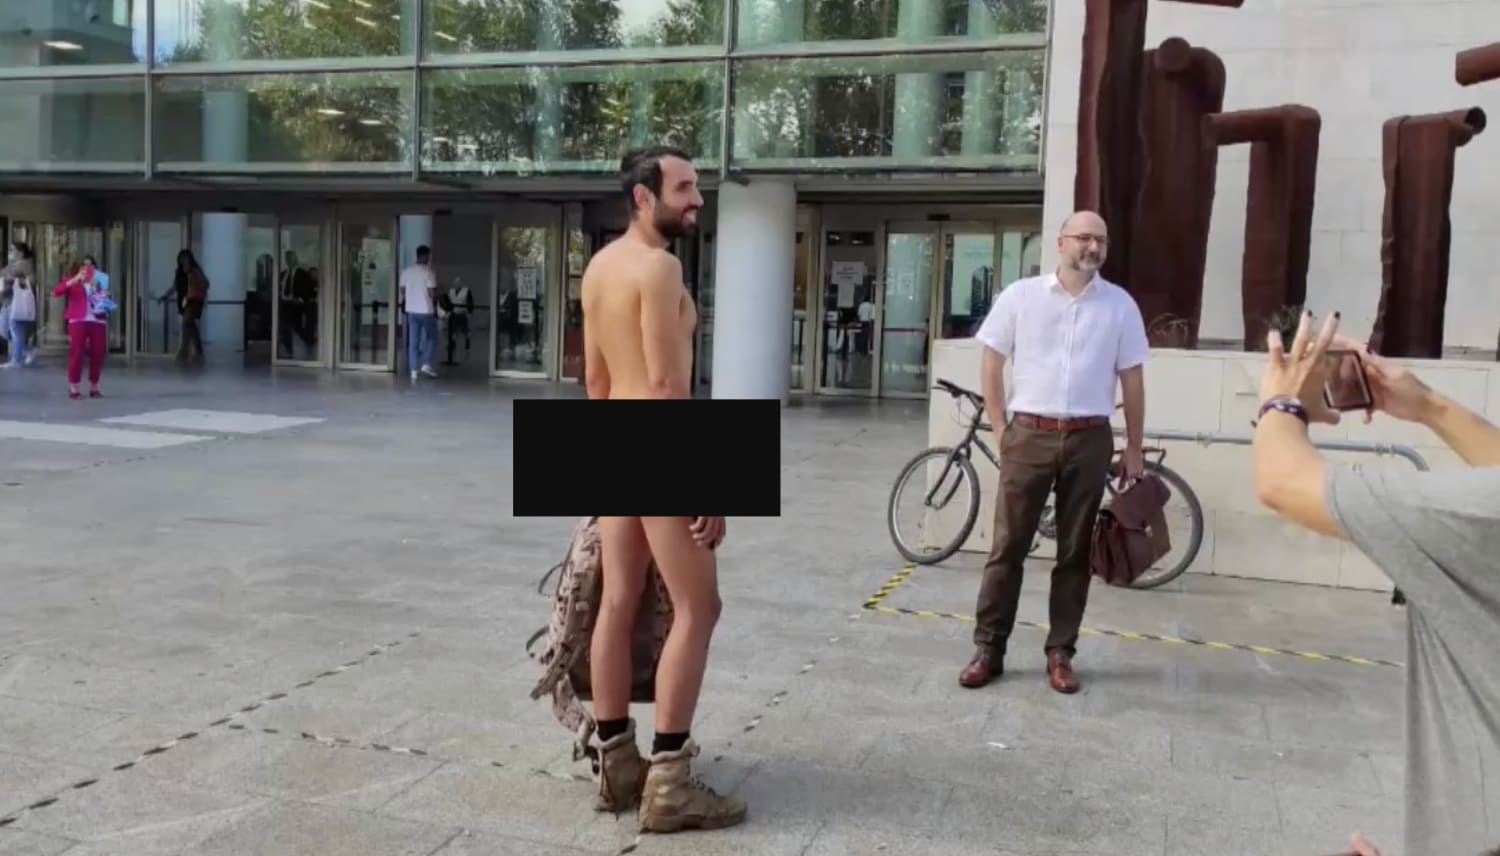 Un hombre causa polémica por asistir desnudo al juicio donde se le acusa de  exhibicionismo